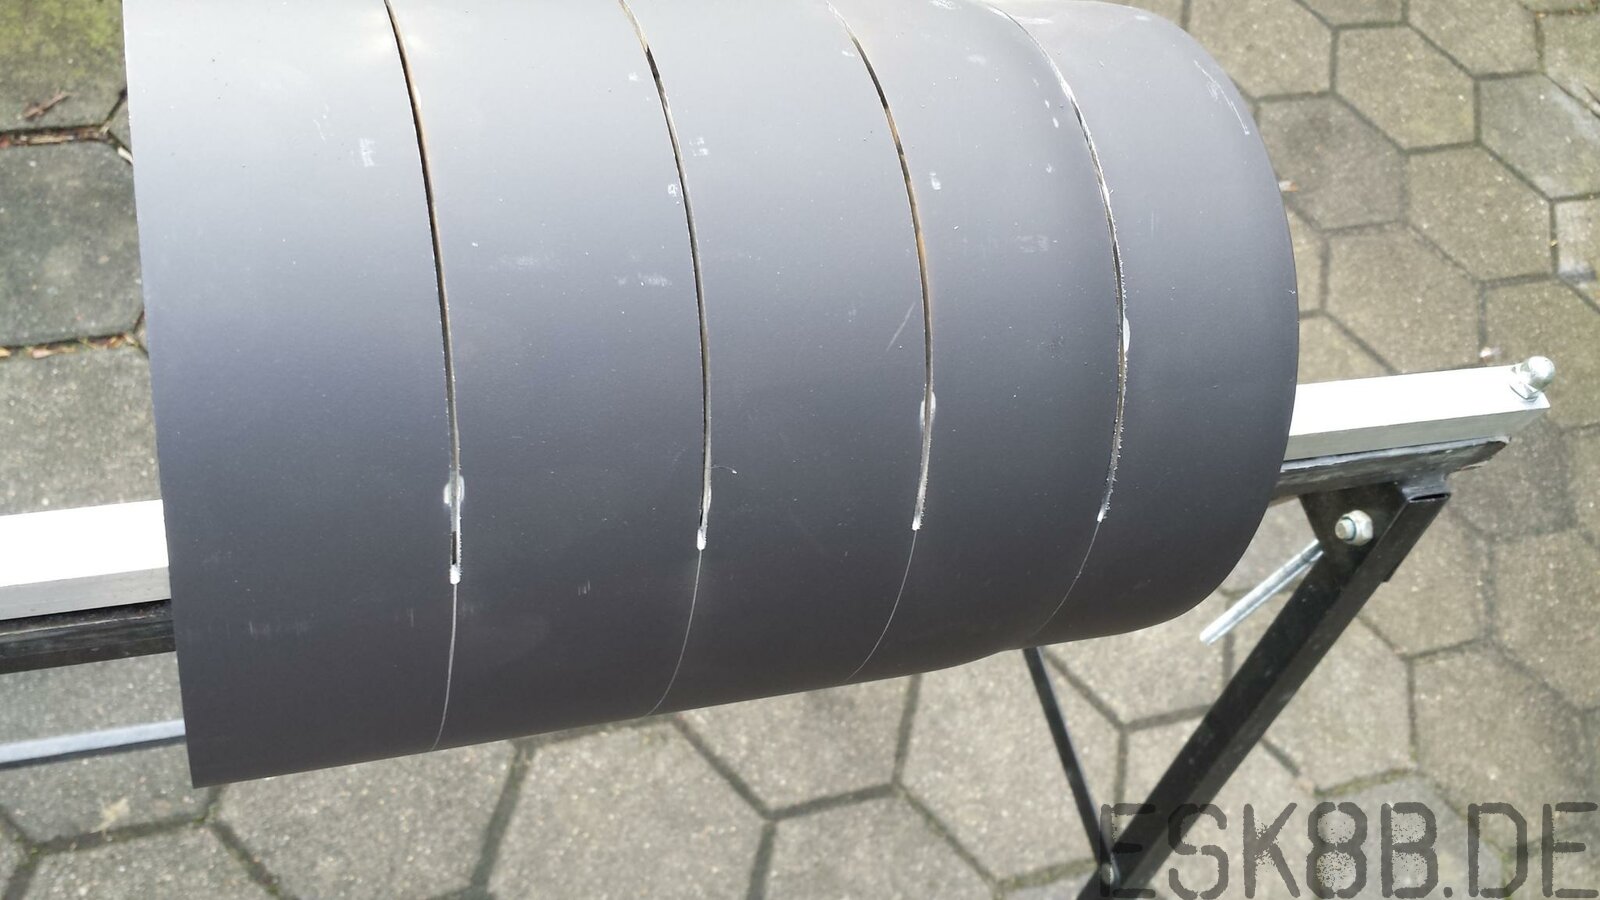 Stahl Drift Reifen:
mit der Flex 50mm schneiden